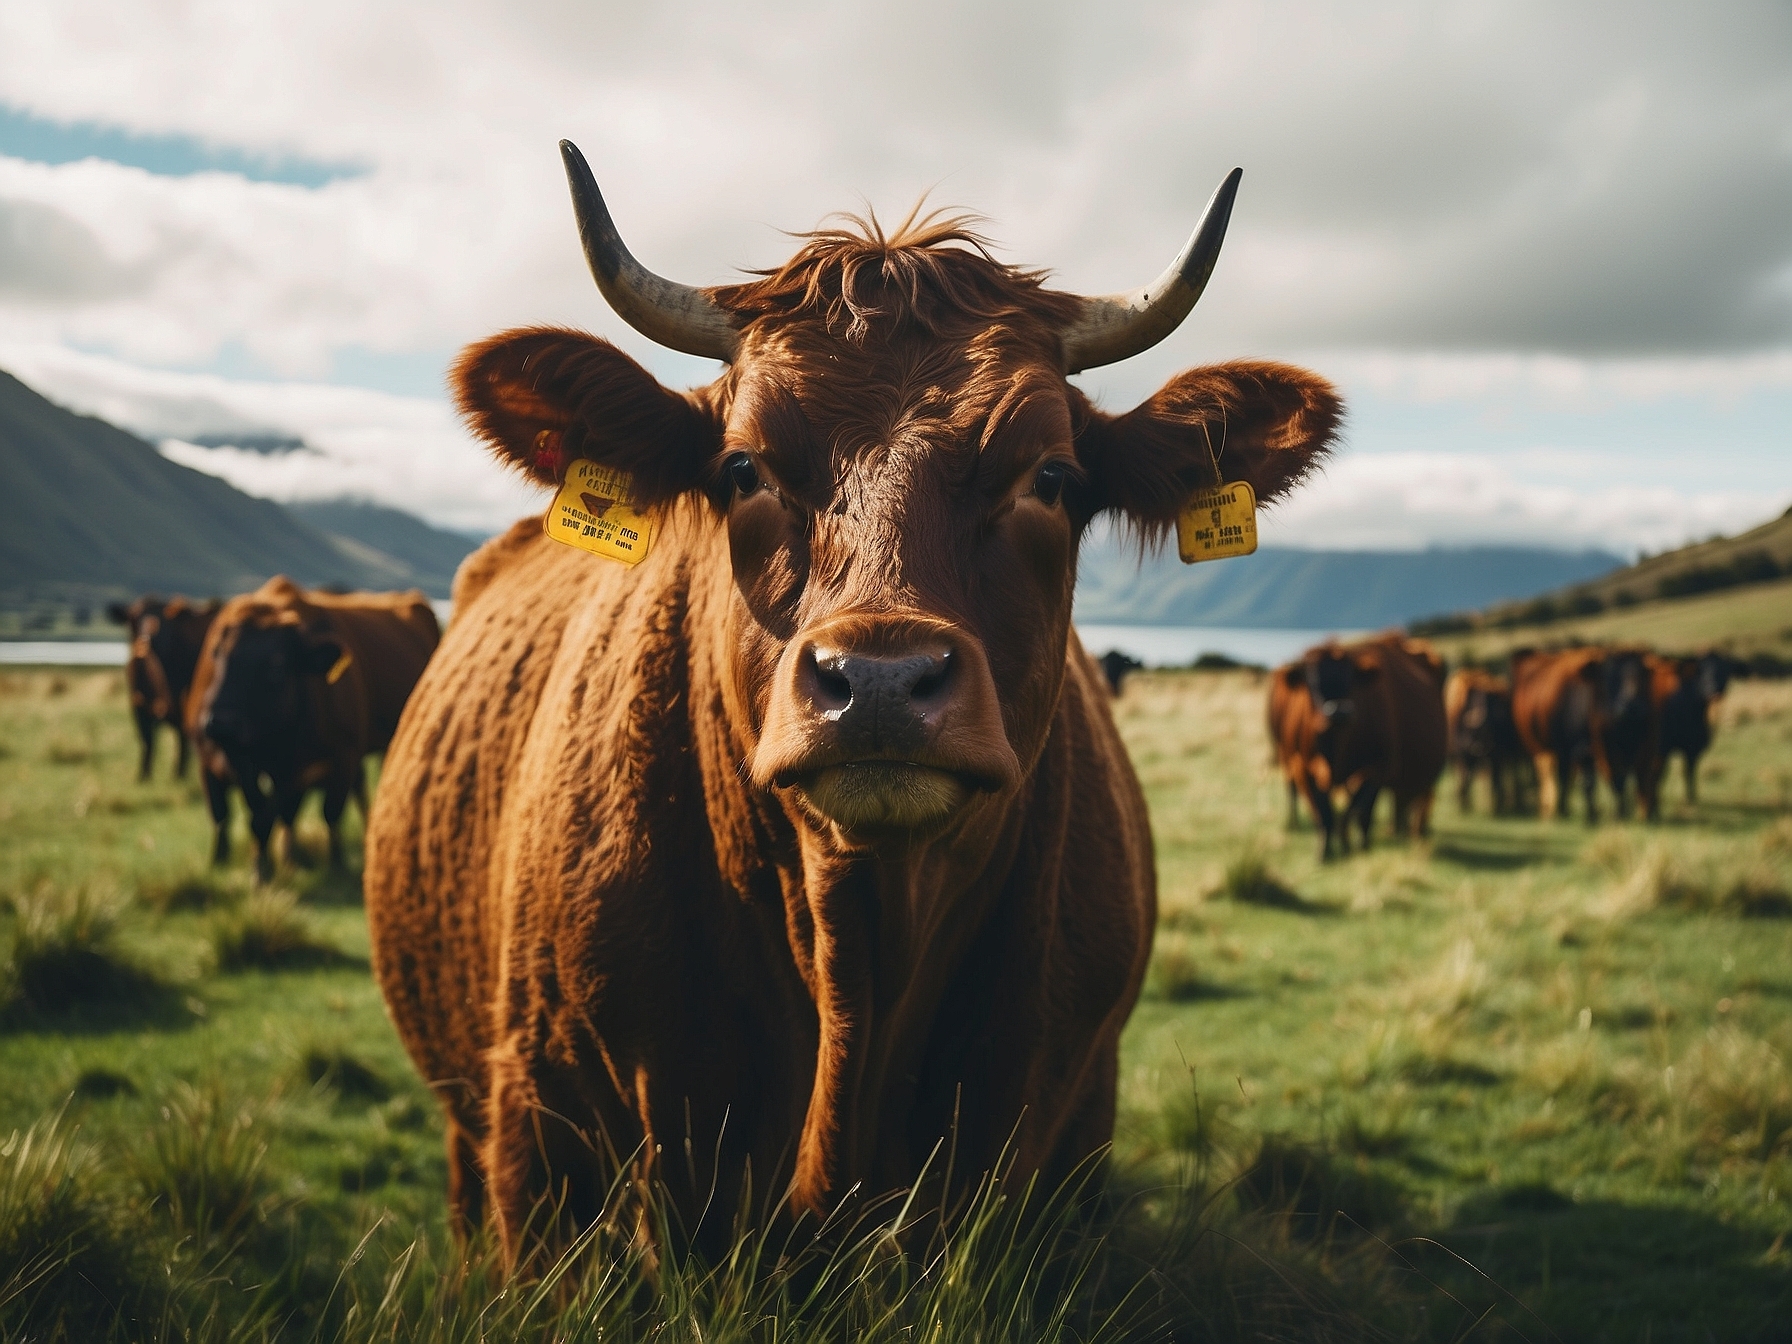 紐西蘭草飼牛-草飼牛-草飼牛香港-紐西蘭草飼-草飼-New Zealand grass fed cattle-grass fed cattle